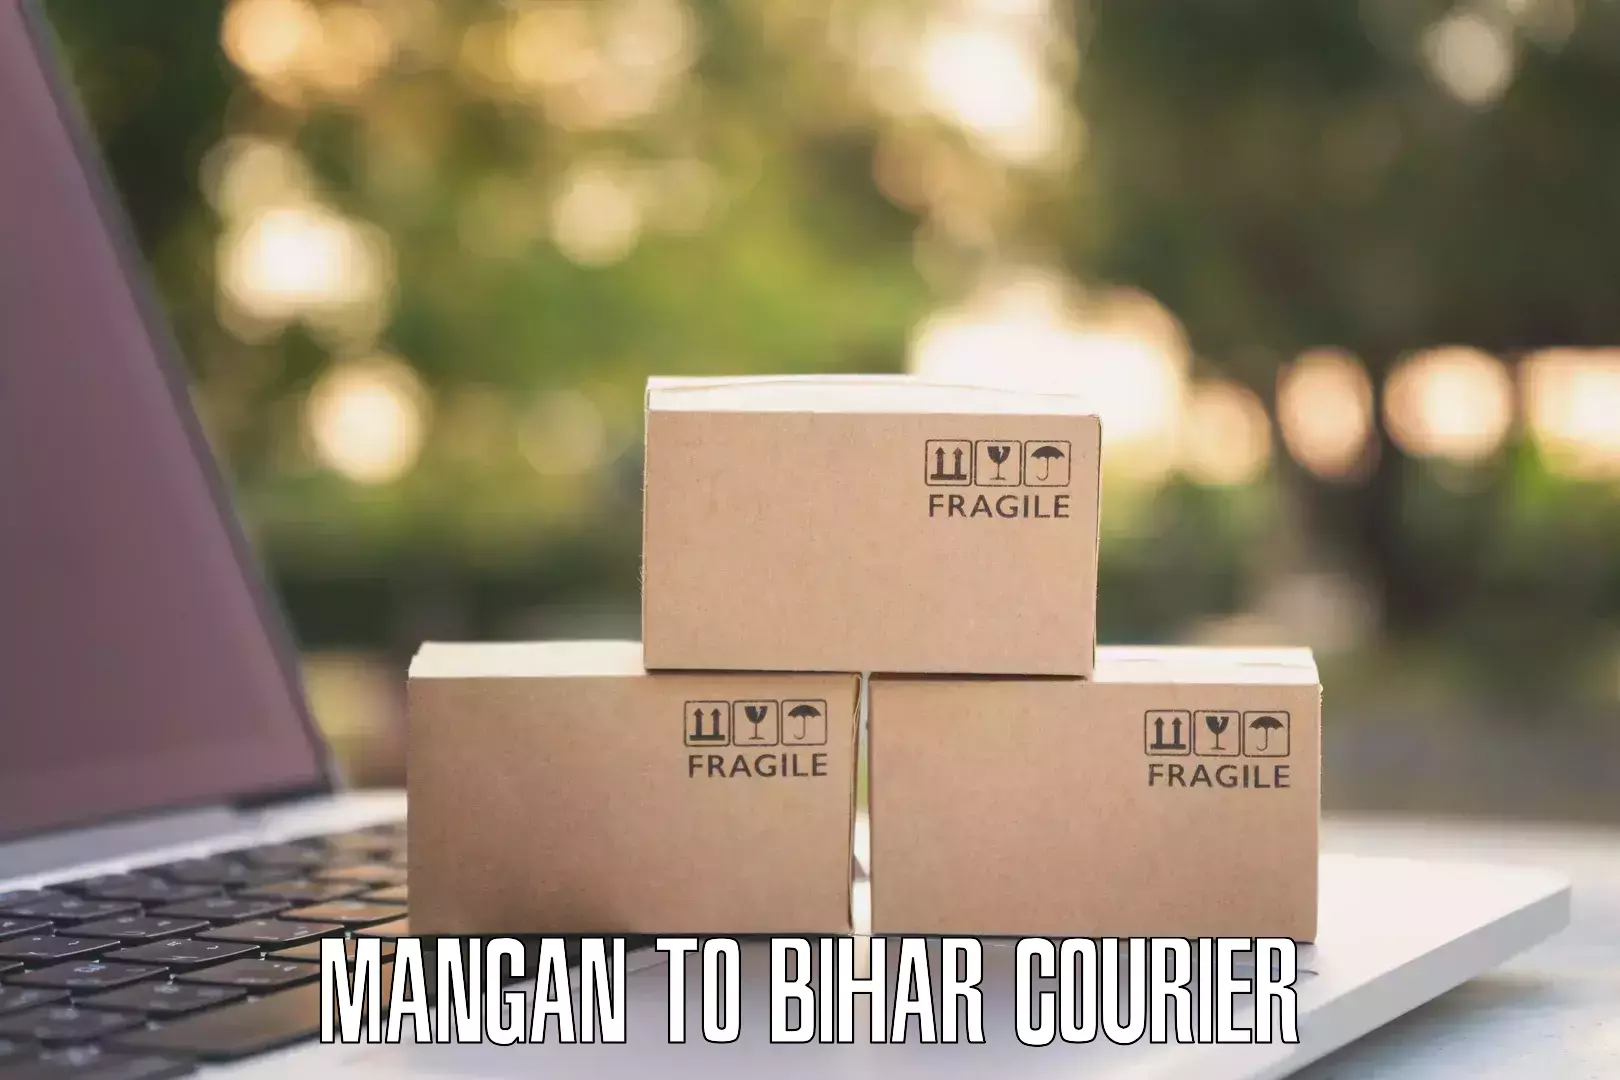 Next day courier Mangan to IIIT Bhagalpur